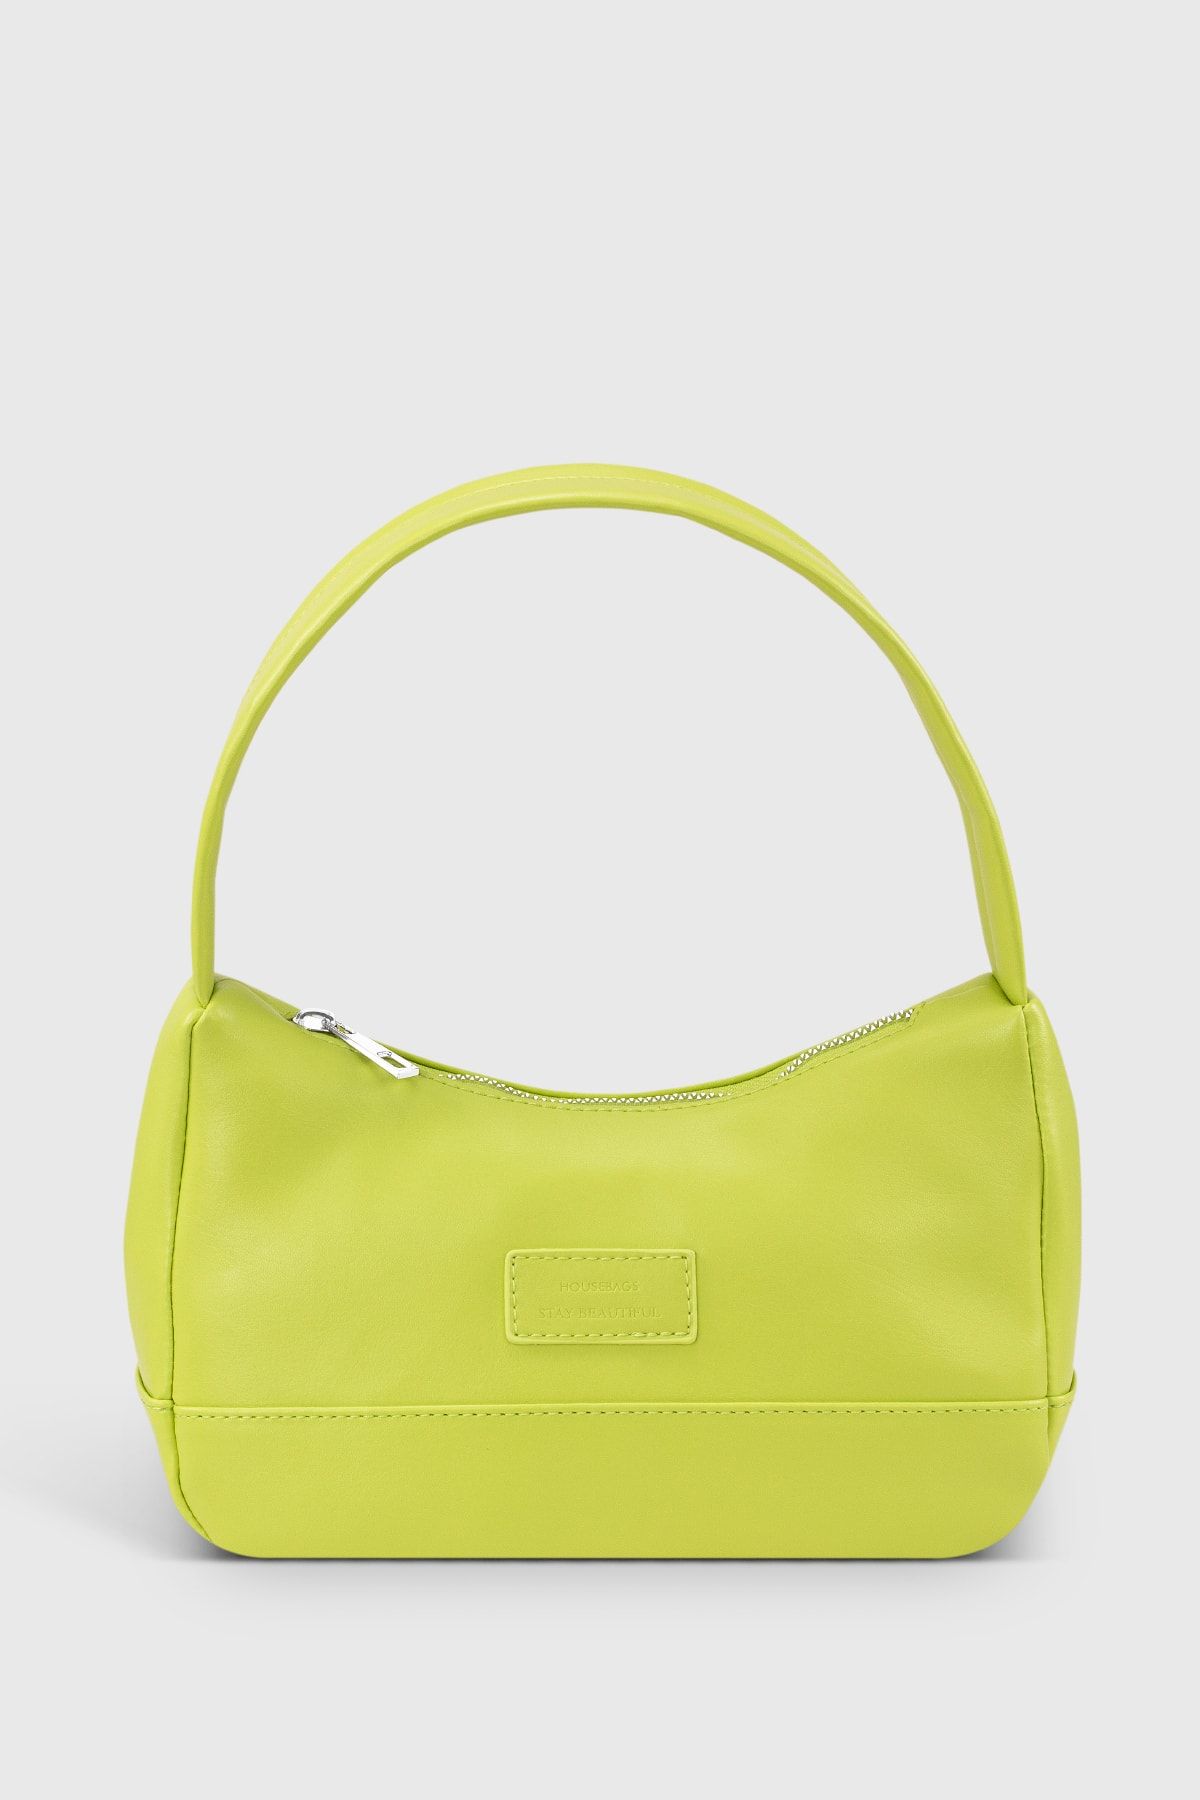 Housebags Kadın Neon Yeşil Baguette Çanta 197